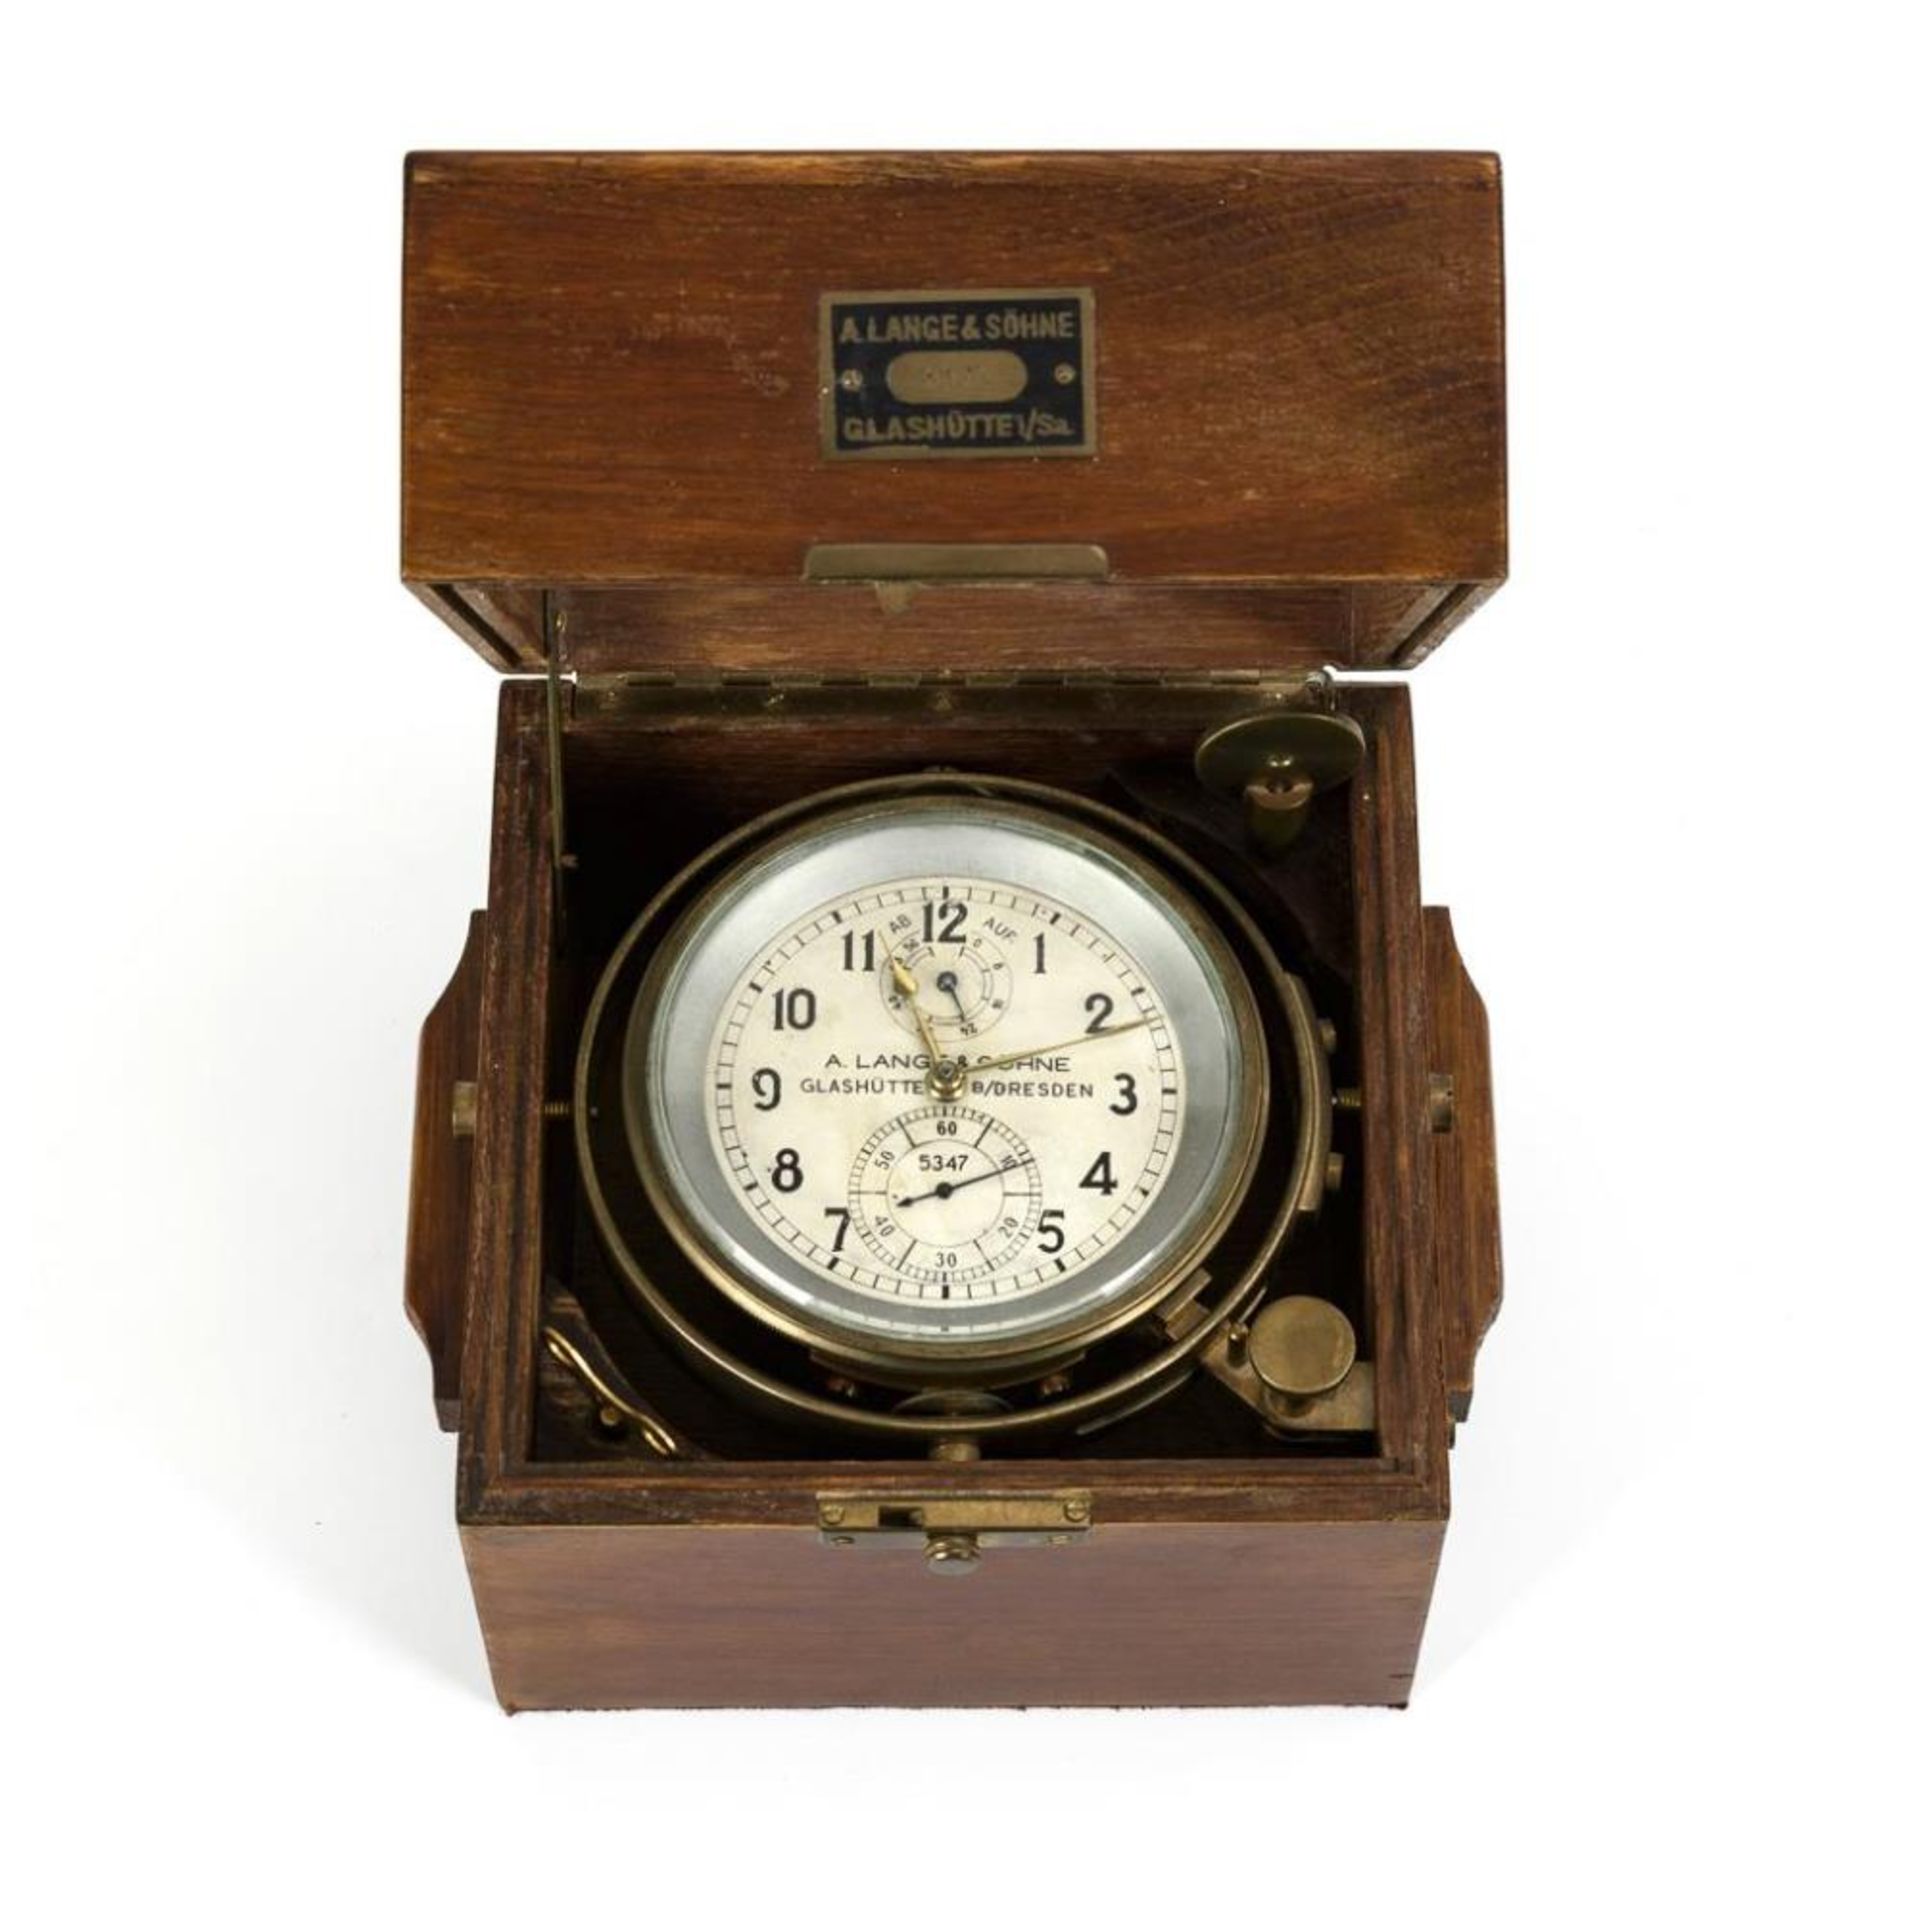 Schiffschronometer mit 56 h Gangreserve. A. Lange & Söhne Glashütte B/Dresden.